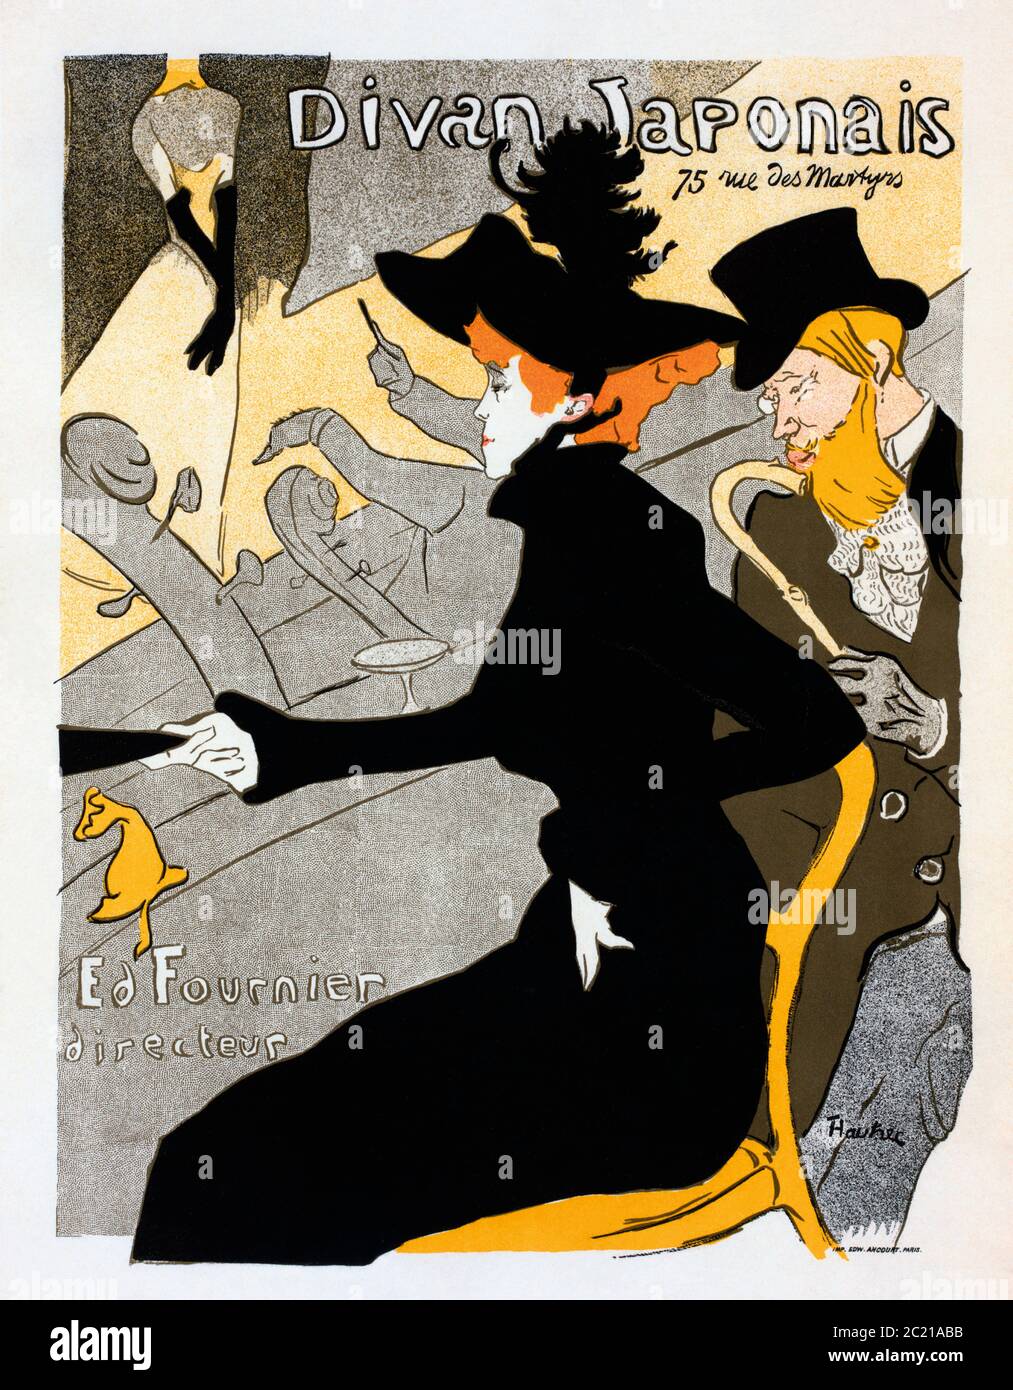 Divan Japonais. Cartel, fechado alrededor de 1893-1894 por el artista francés Henri de Toulouse-Lautrec, 1864-1901. El cartel fue diseñado como un anuncio para el Divan Japonais, un café-cantor parisino. En la foto, la bailarina Jane Avril y el autor Edouard Dujardin están viendo una actuación de Yvette Guilbert. Foto de stock